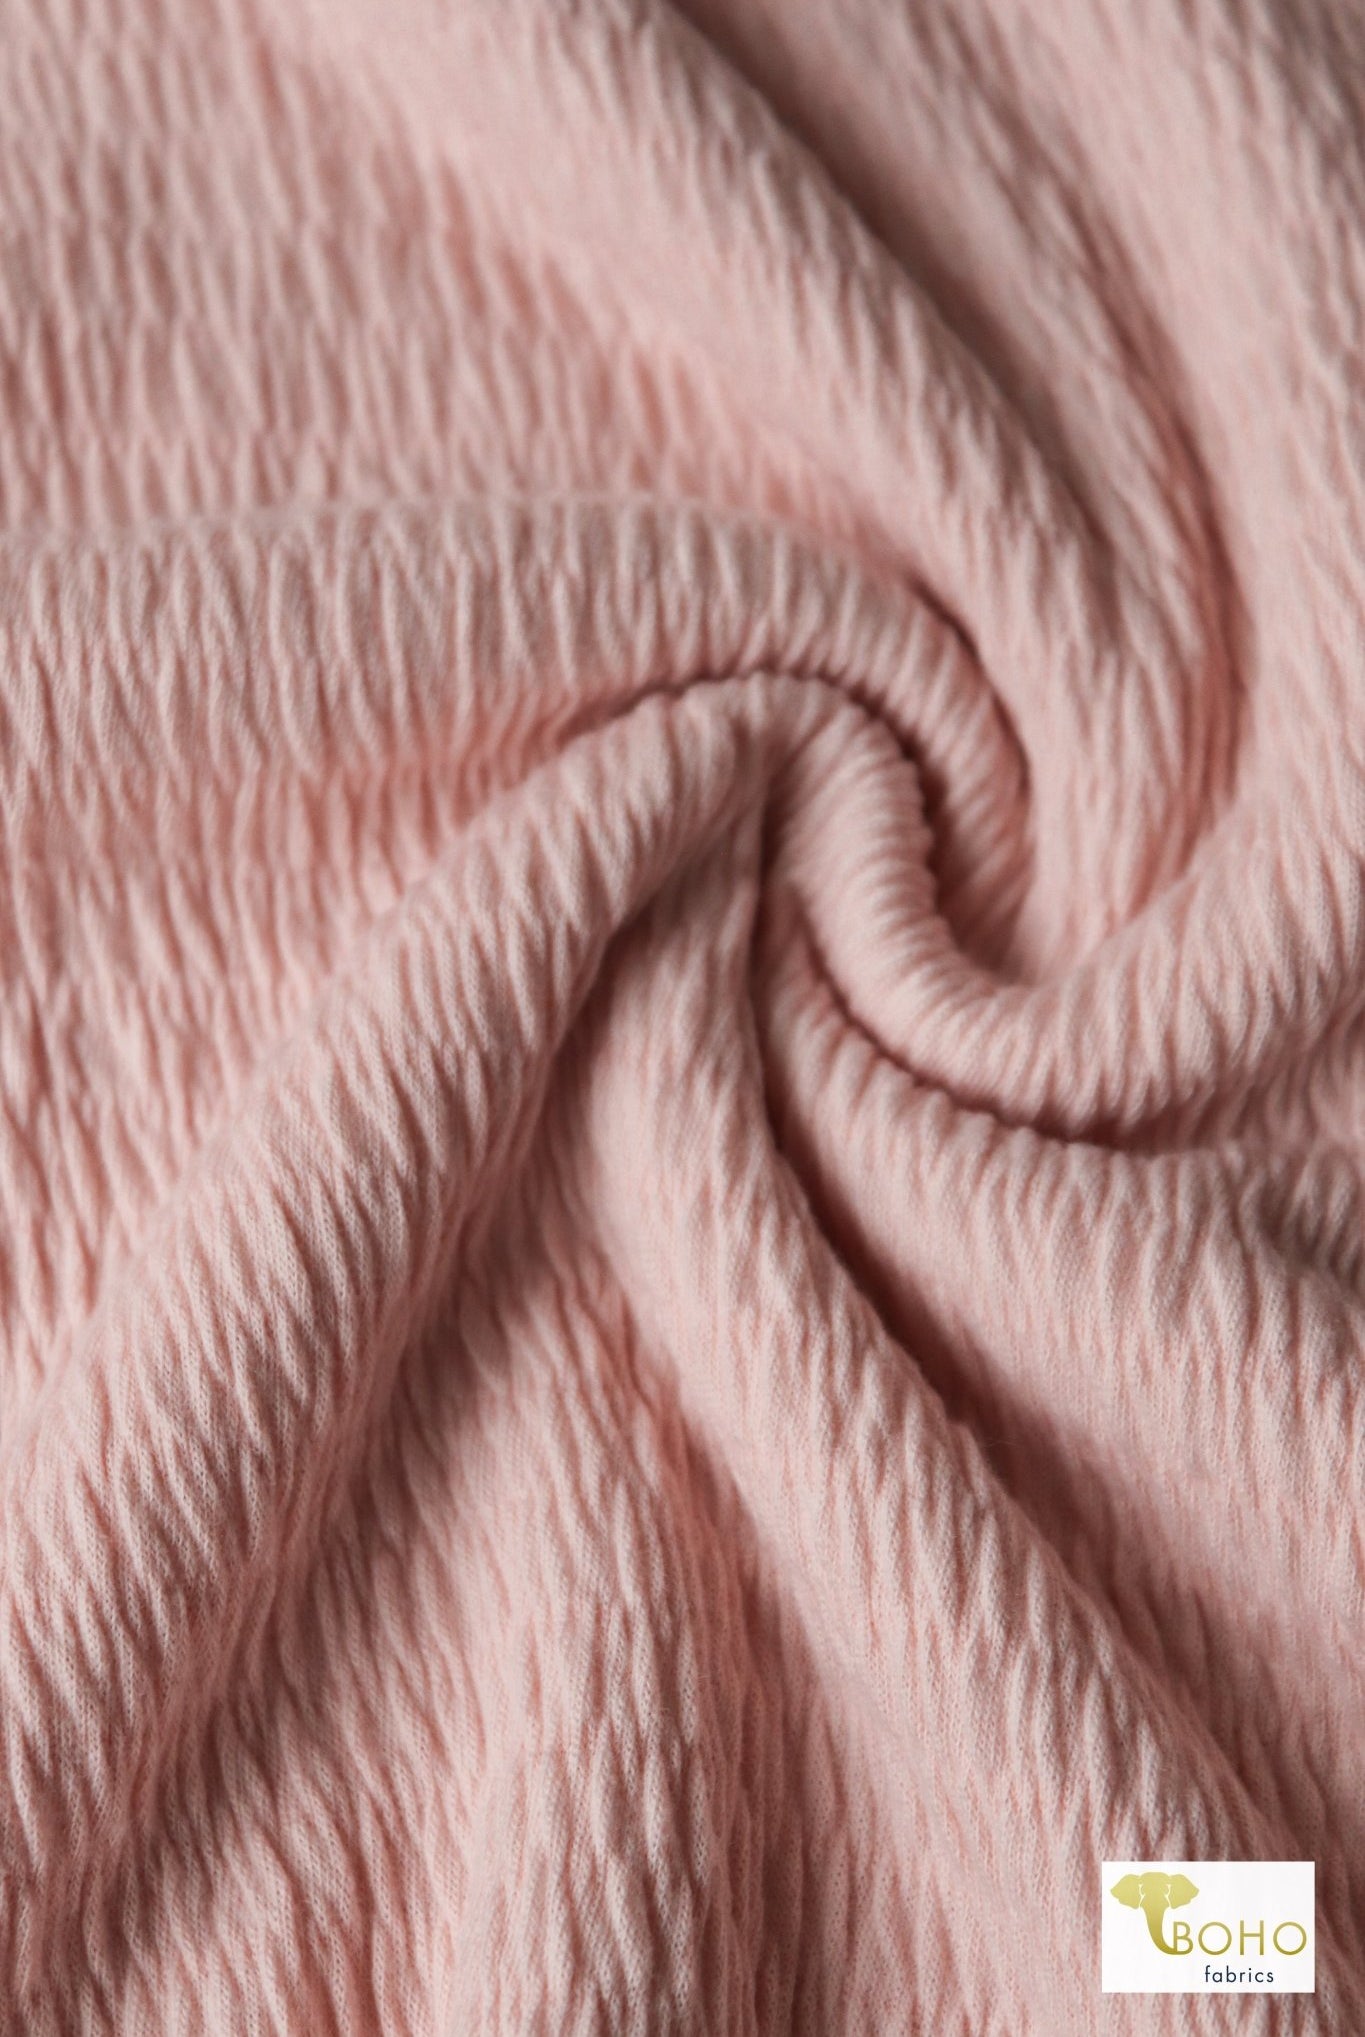 Soft Pink, Smocked Knit - Boho Fabrics